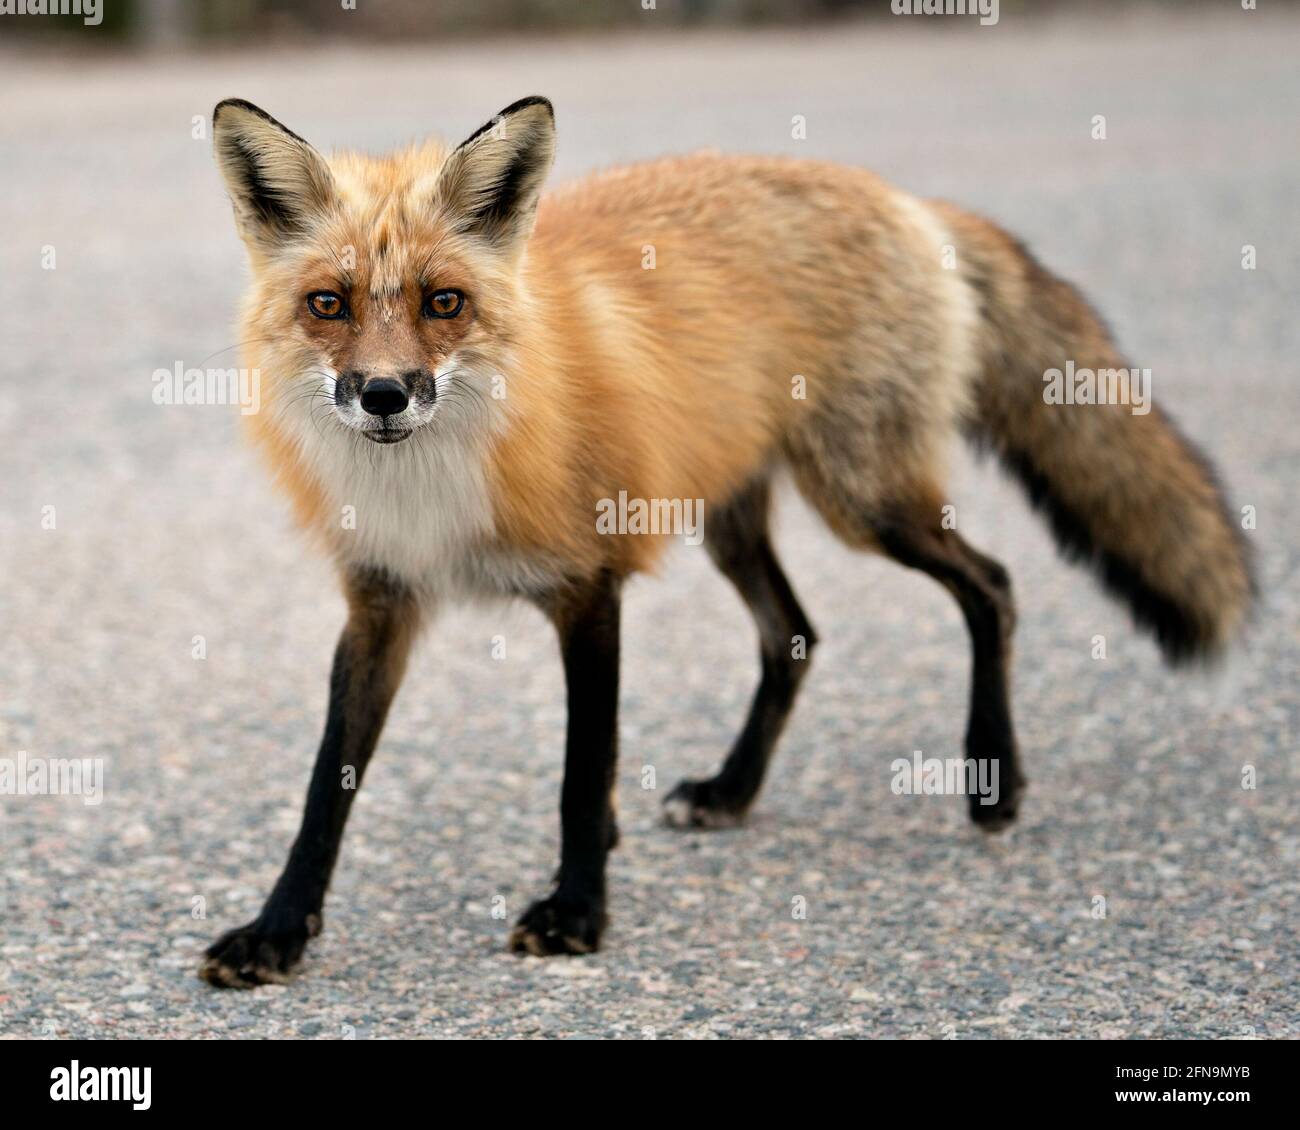 Vista ravvicinata del profilo Red Fox guardando la fotocamera nella stagione primaverile con sfondo sfocato nel suo ambiente e habitat. Immagine FOX. Immagine. Verticale Foto Stock